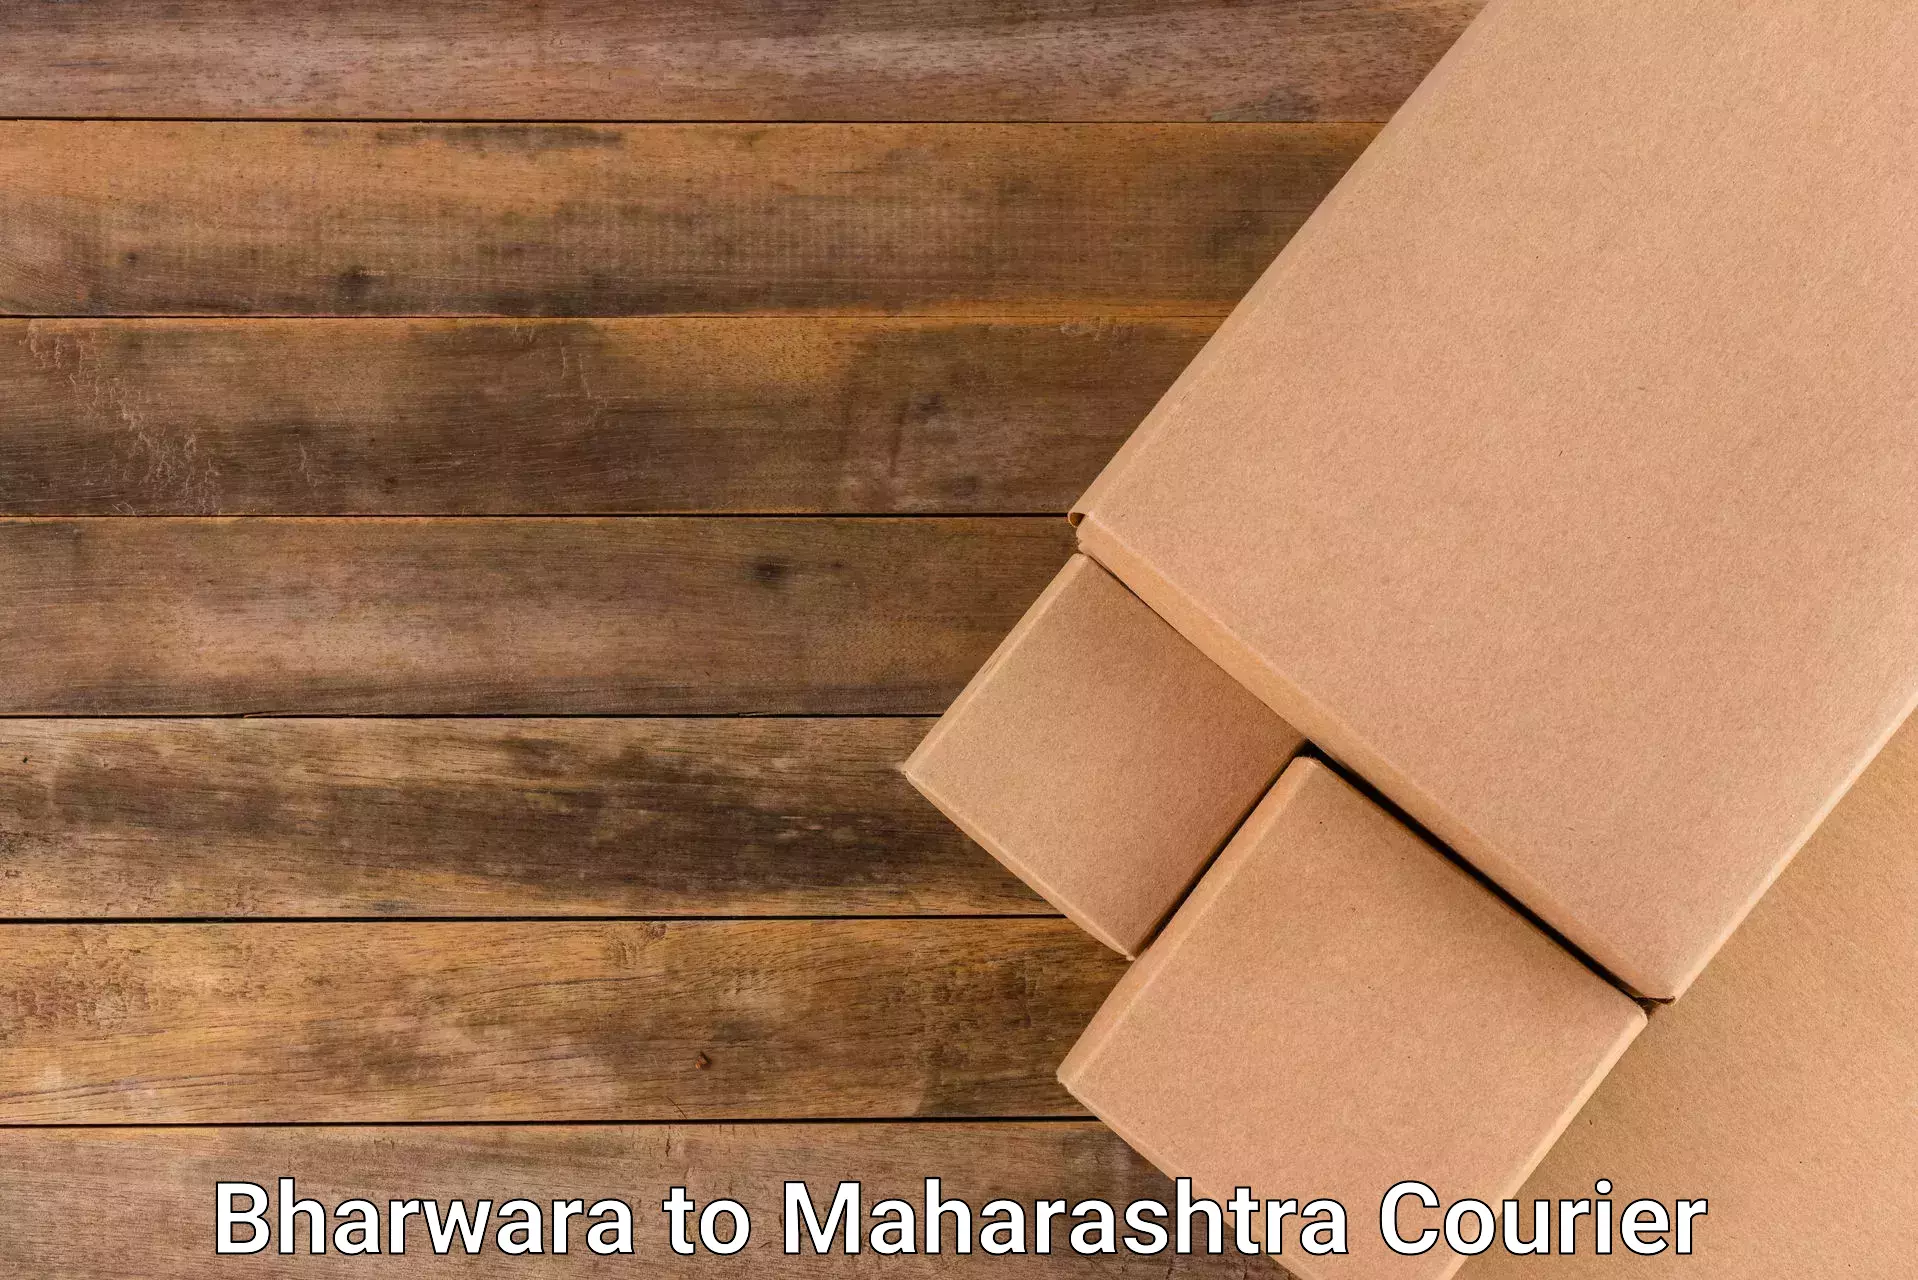 Next day courier Bharwara to Maharashtra